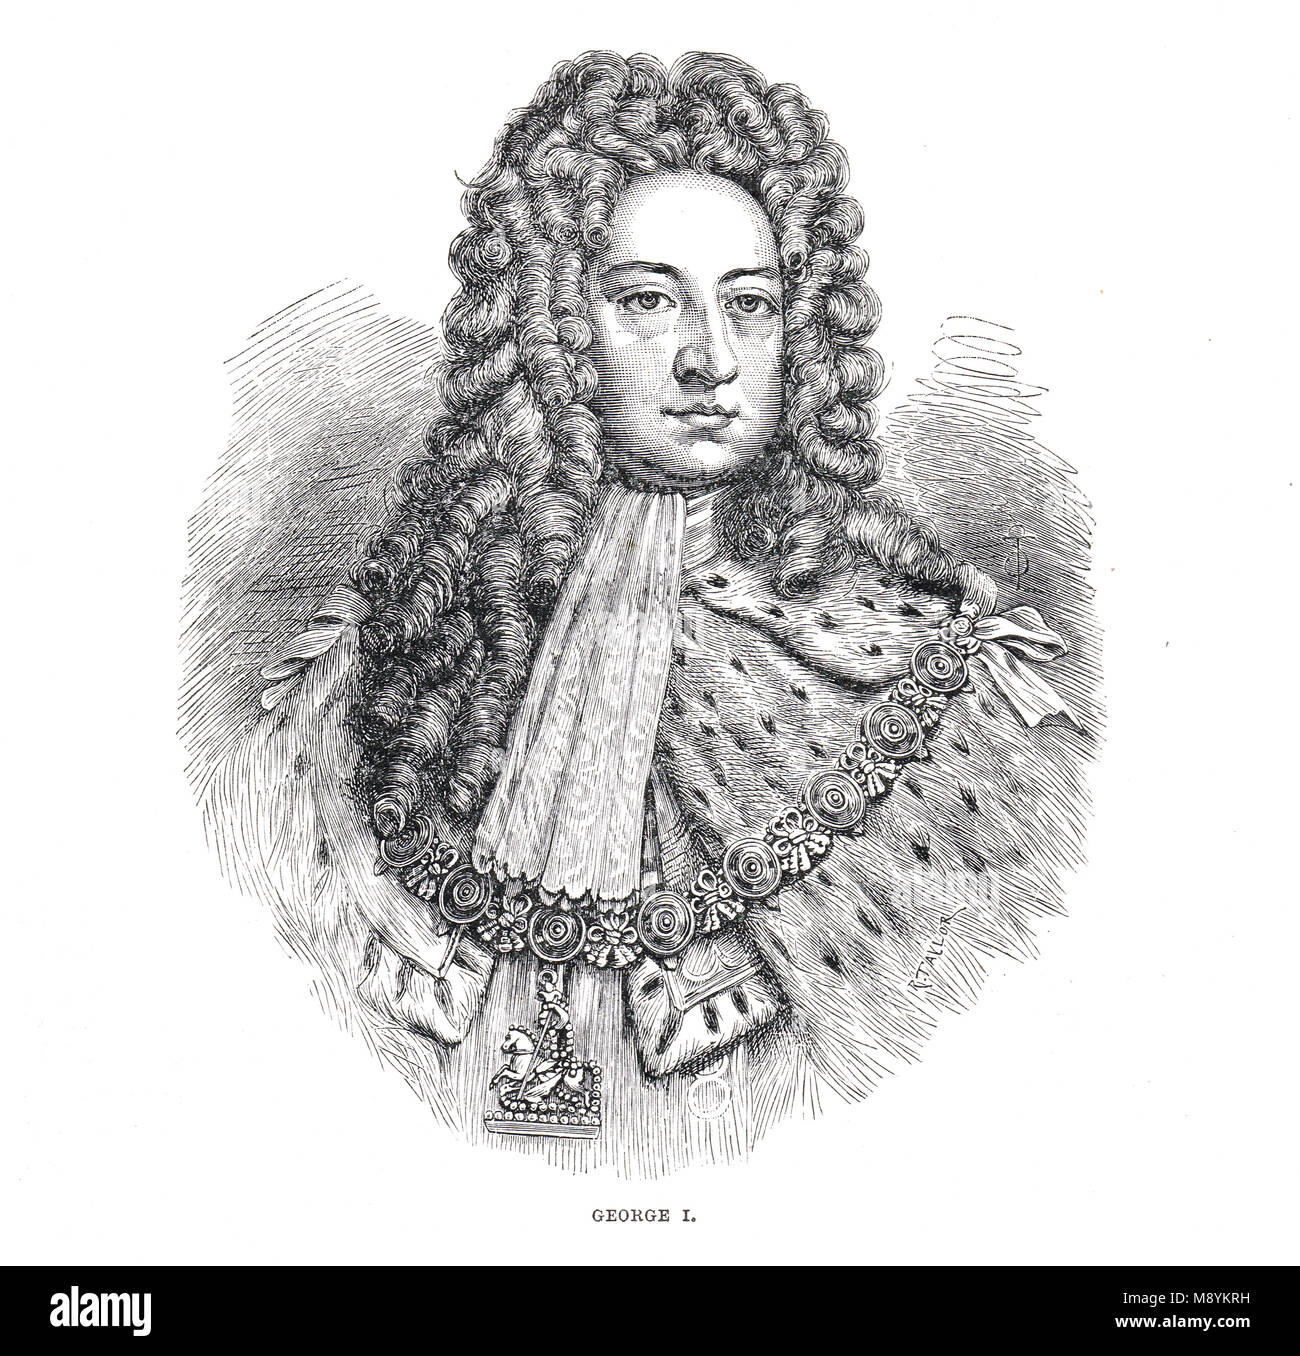 El rey Jorge I de del Reino Unido de Gran Bretaña e Irlanda, reinó 1714-1727, primer monarca de la casa de Hanover Foto de stock